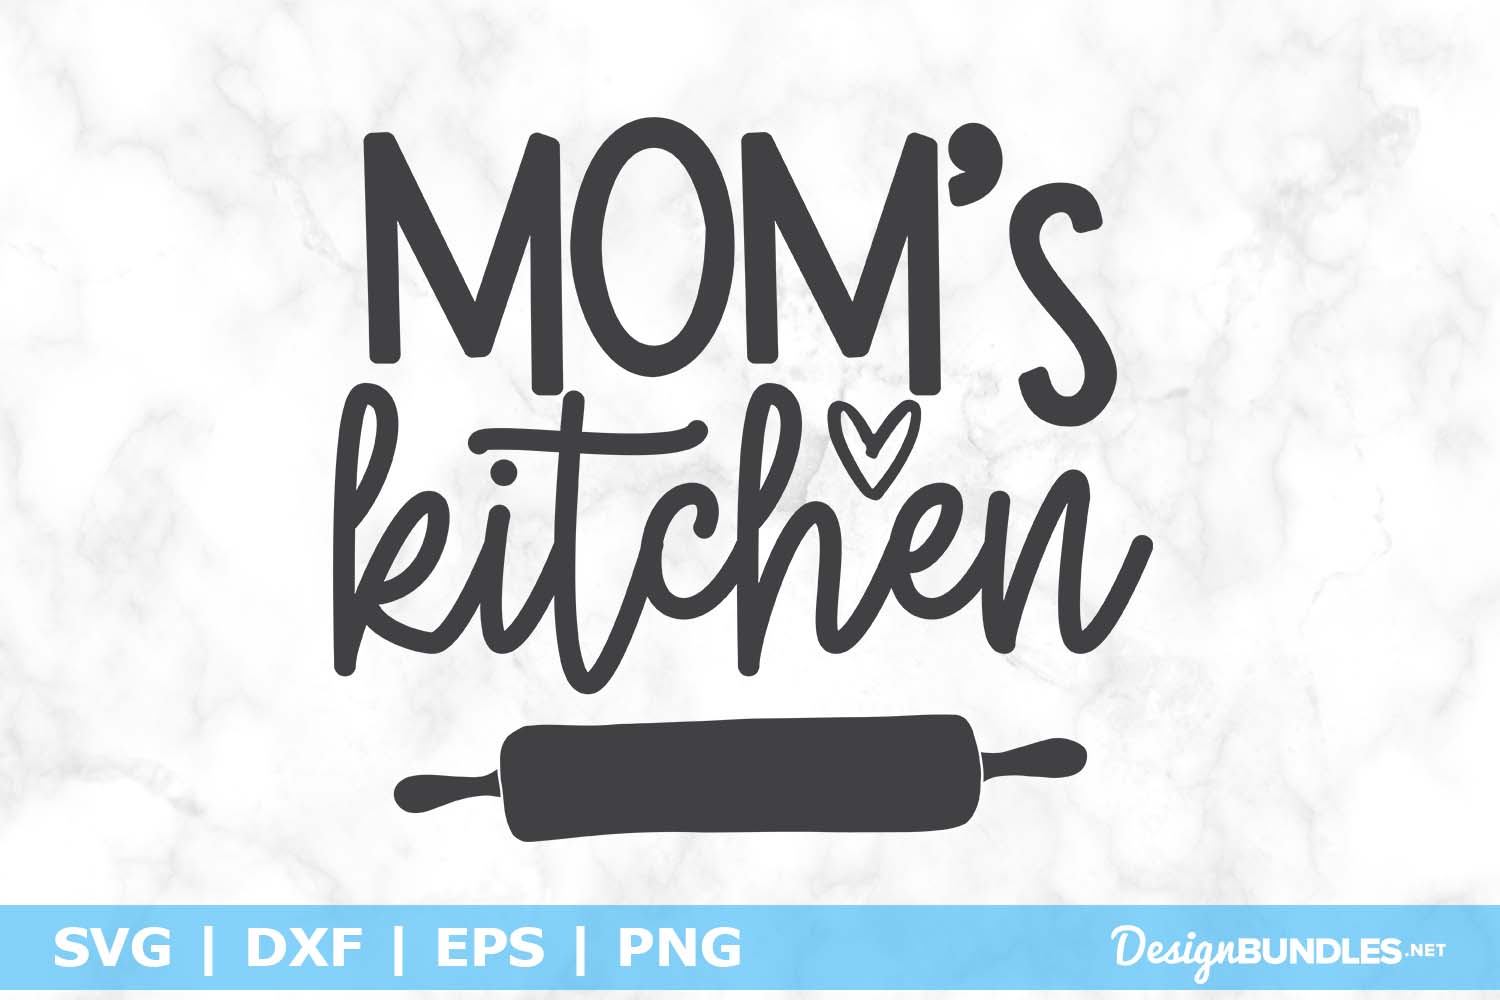 Download Mom's Kitchen SVG File